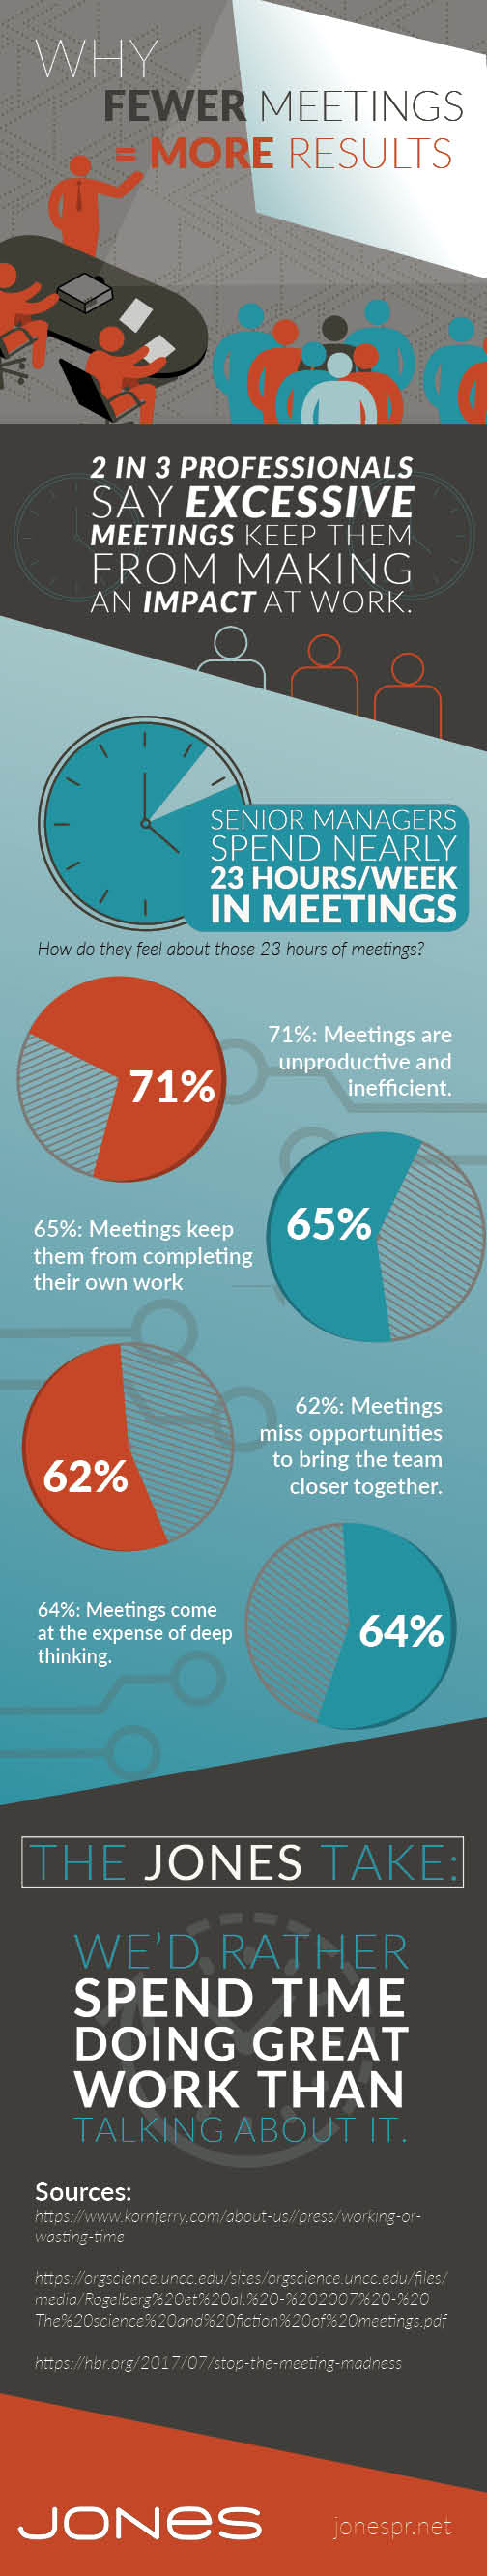 Jones-meeting-infographic